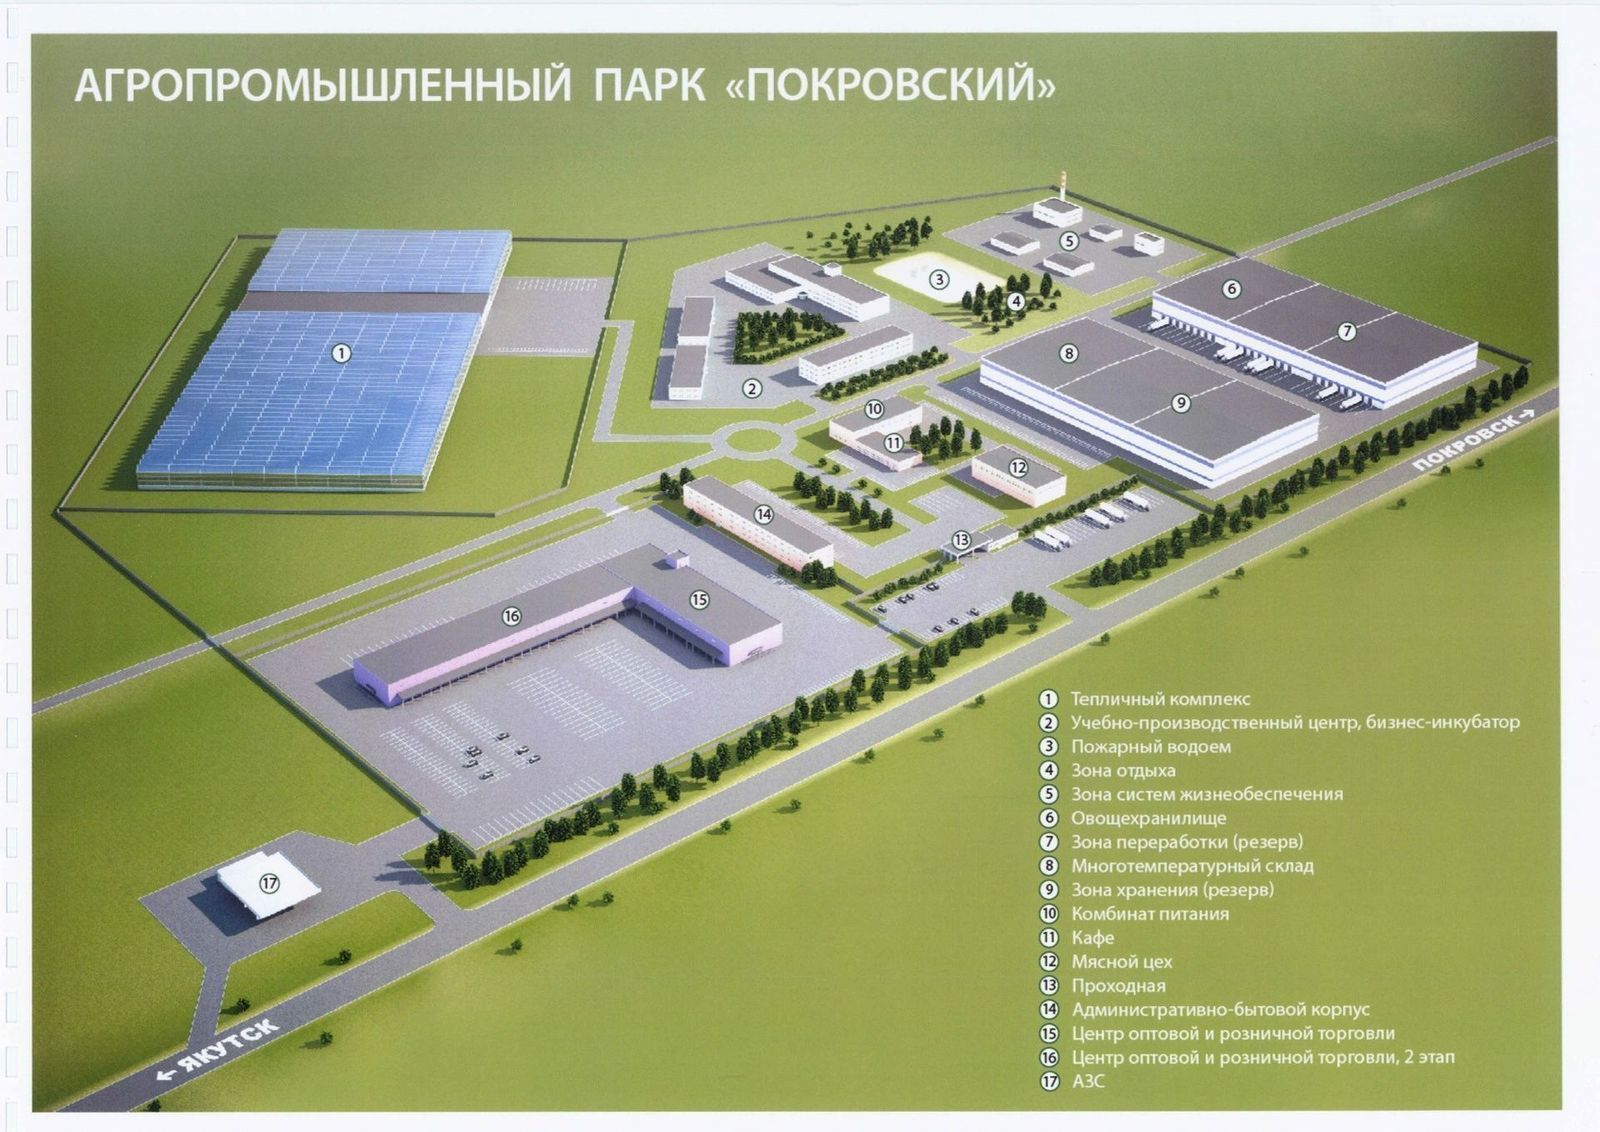 Агропарк «Покровский» будет построен совместно с технопарком «Якутия»